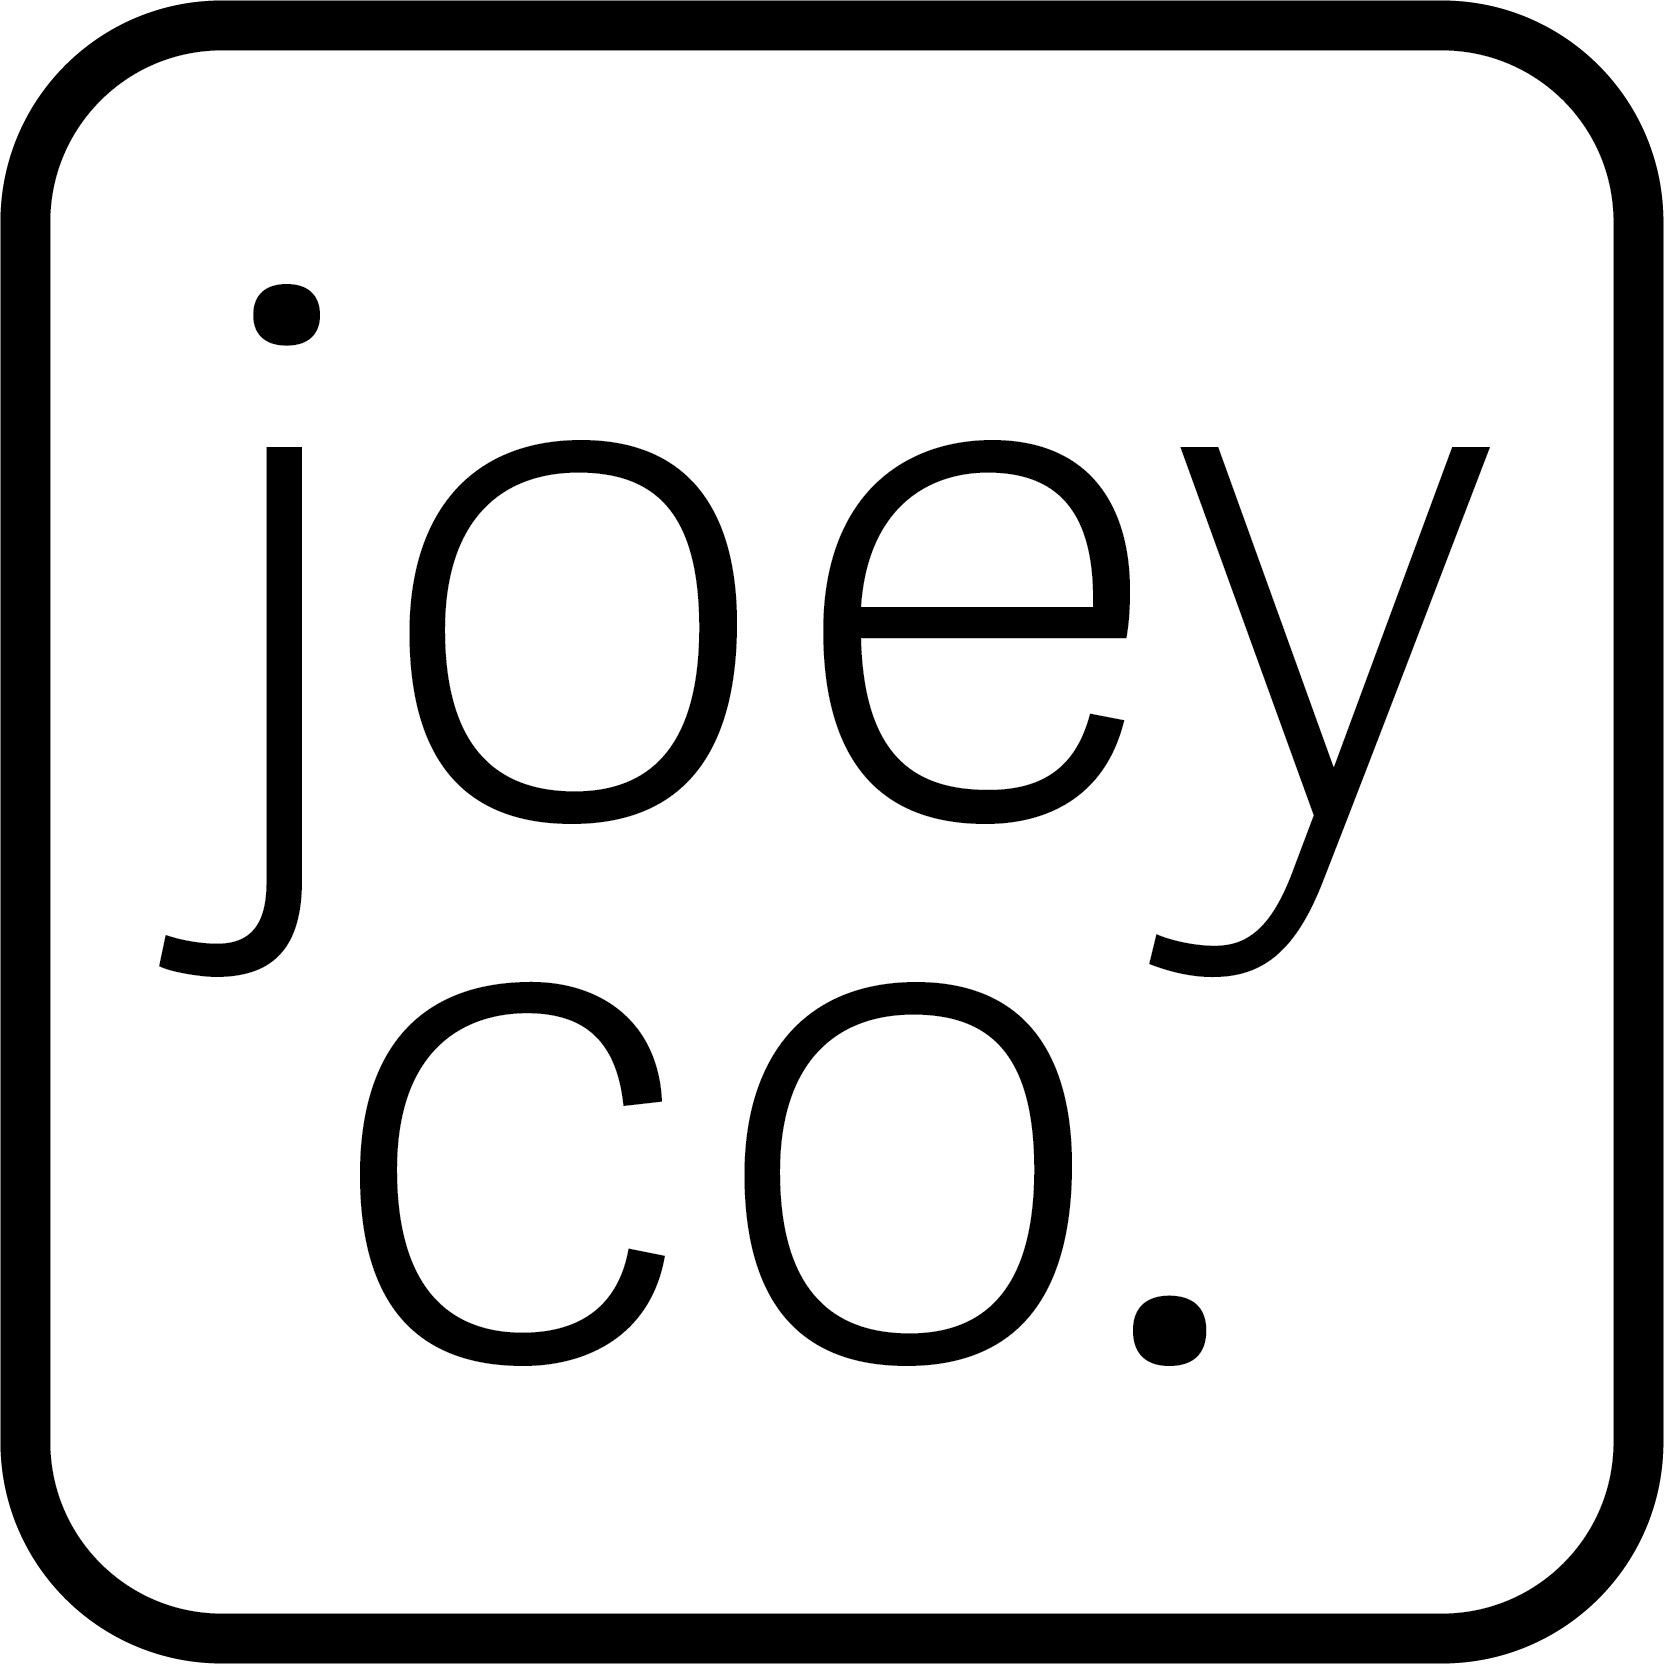 Joey Co.